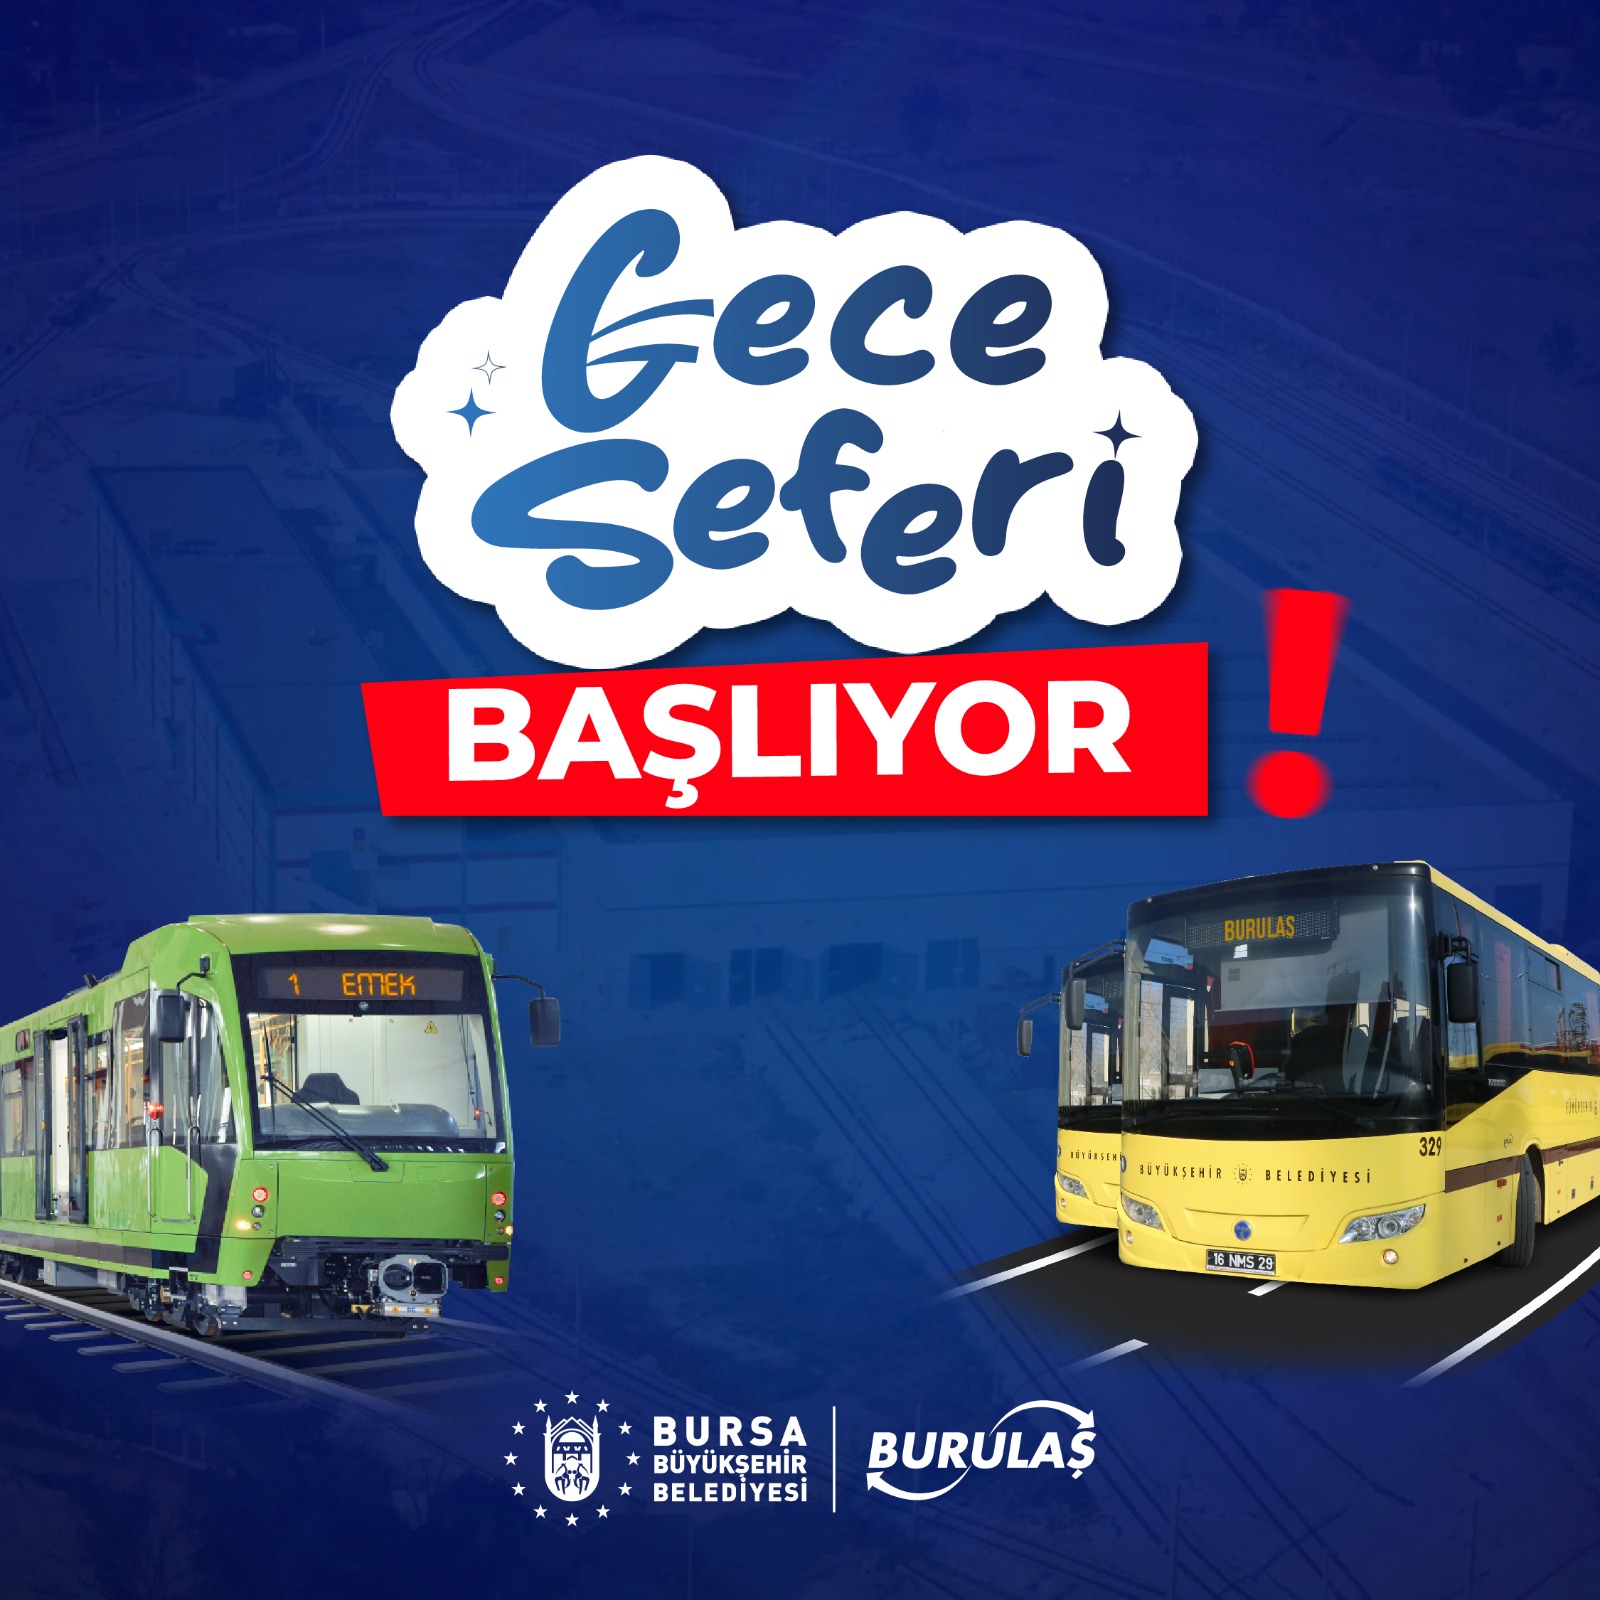 Bursa’da 4 günlük bayram boyunca ulaşım ücretsiz olacak